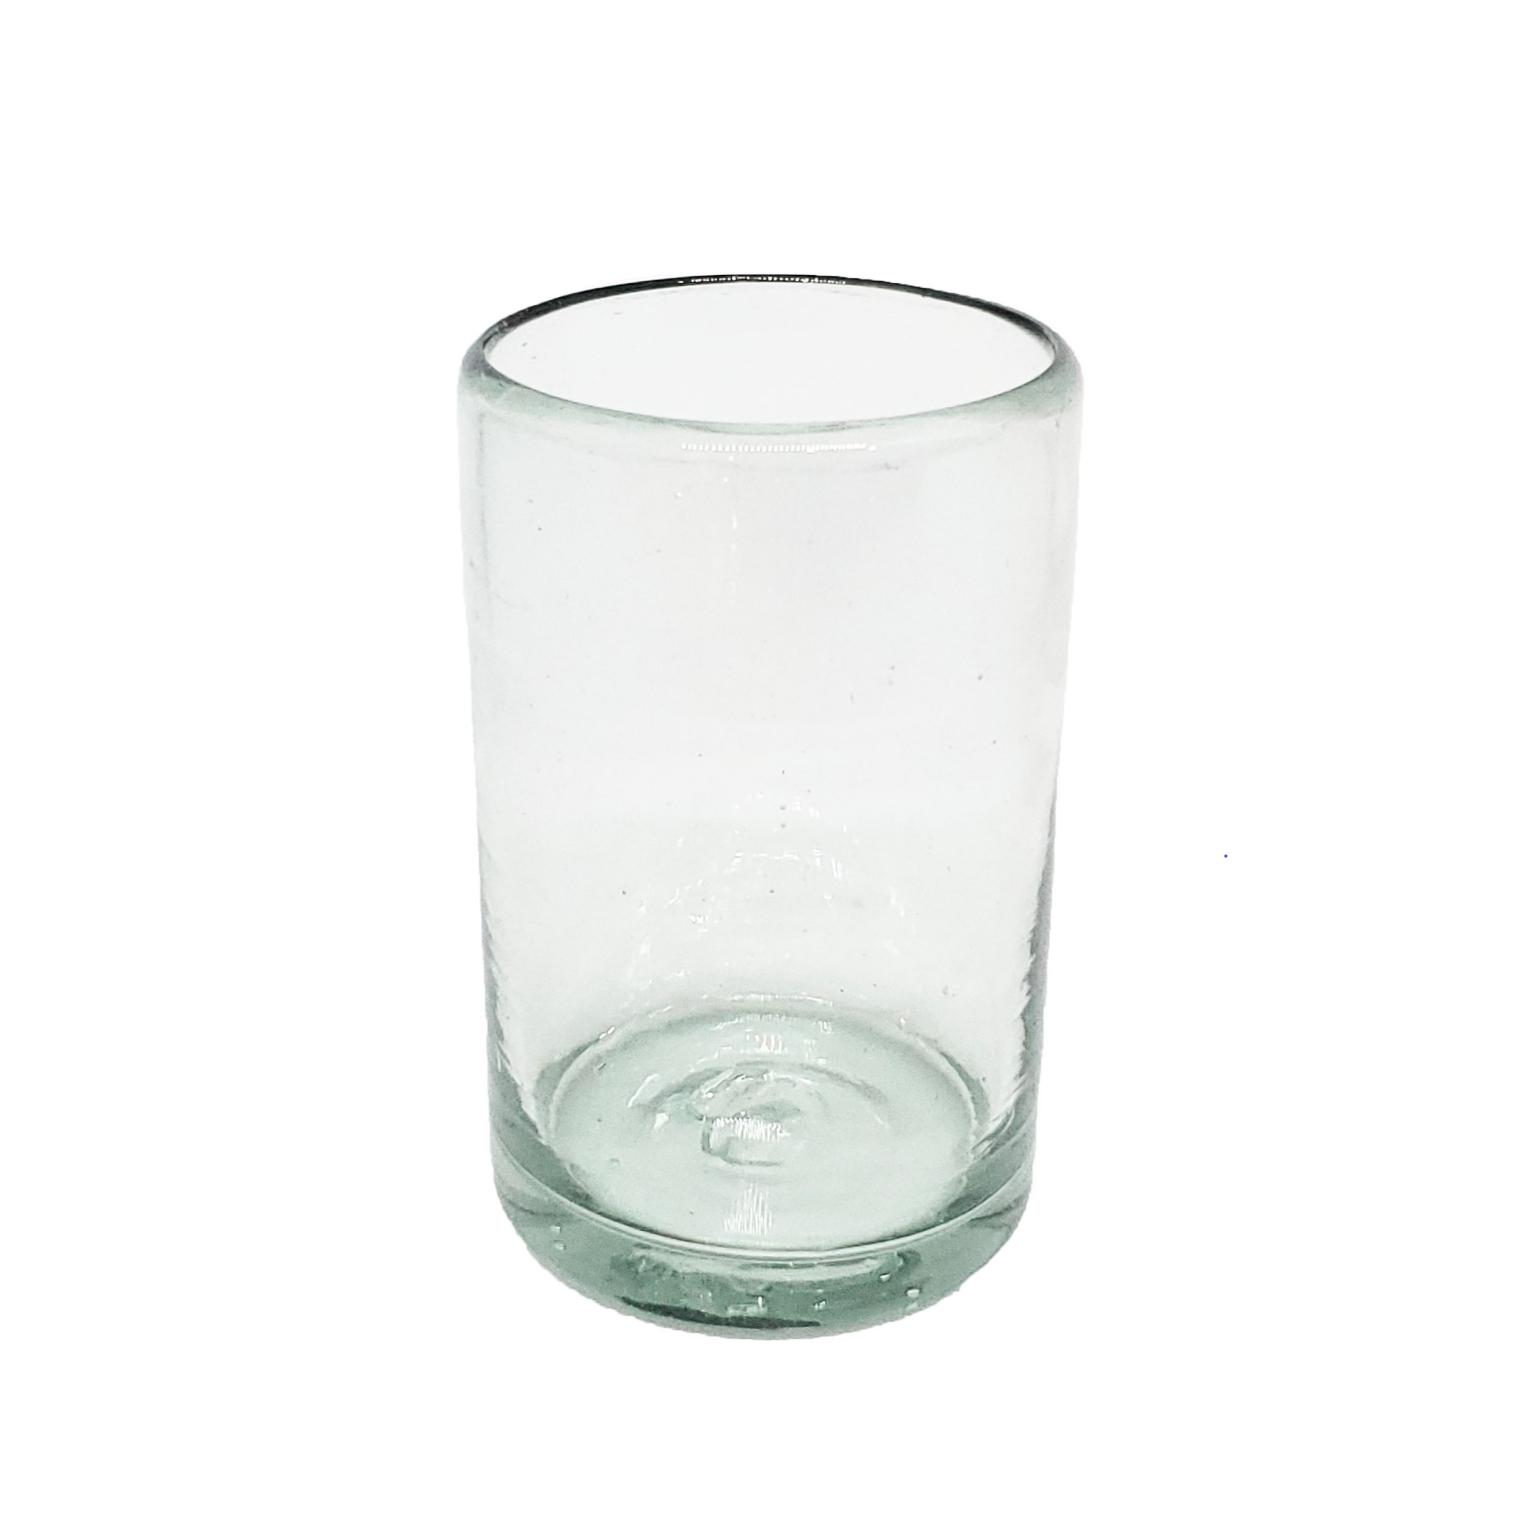 Ofertas / Juego de 6 vasos Jugo 9oz Transparentes, 9 oz, Vidrio Reciclado, Libre de Plomo y Toxinas / stos artesanales vasos le darn un toque clsico a su bebida favorita.